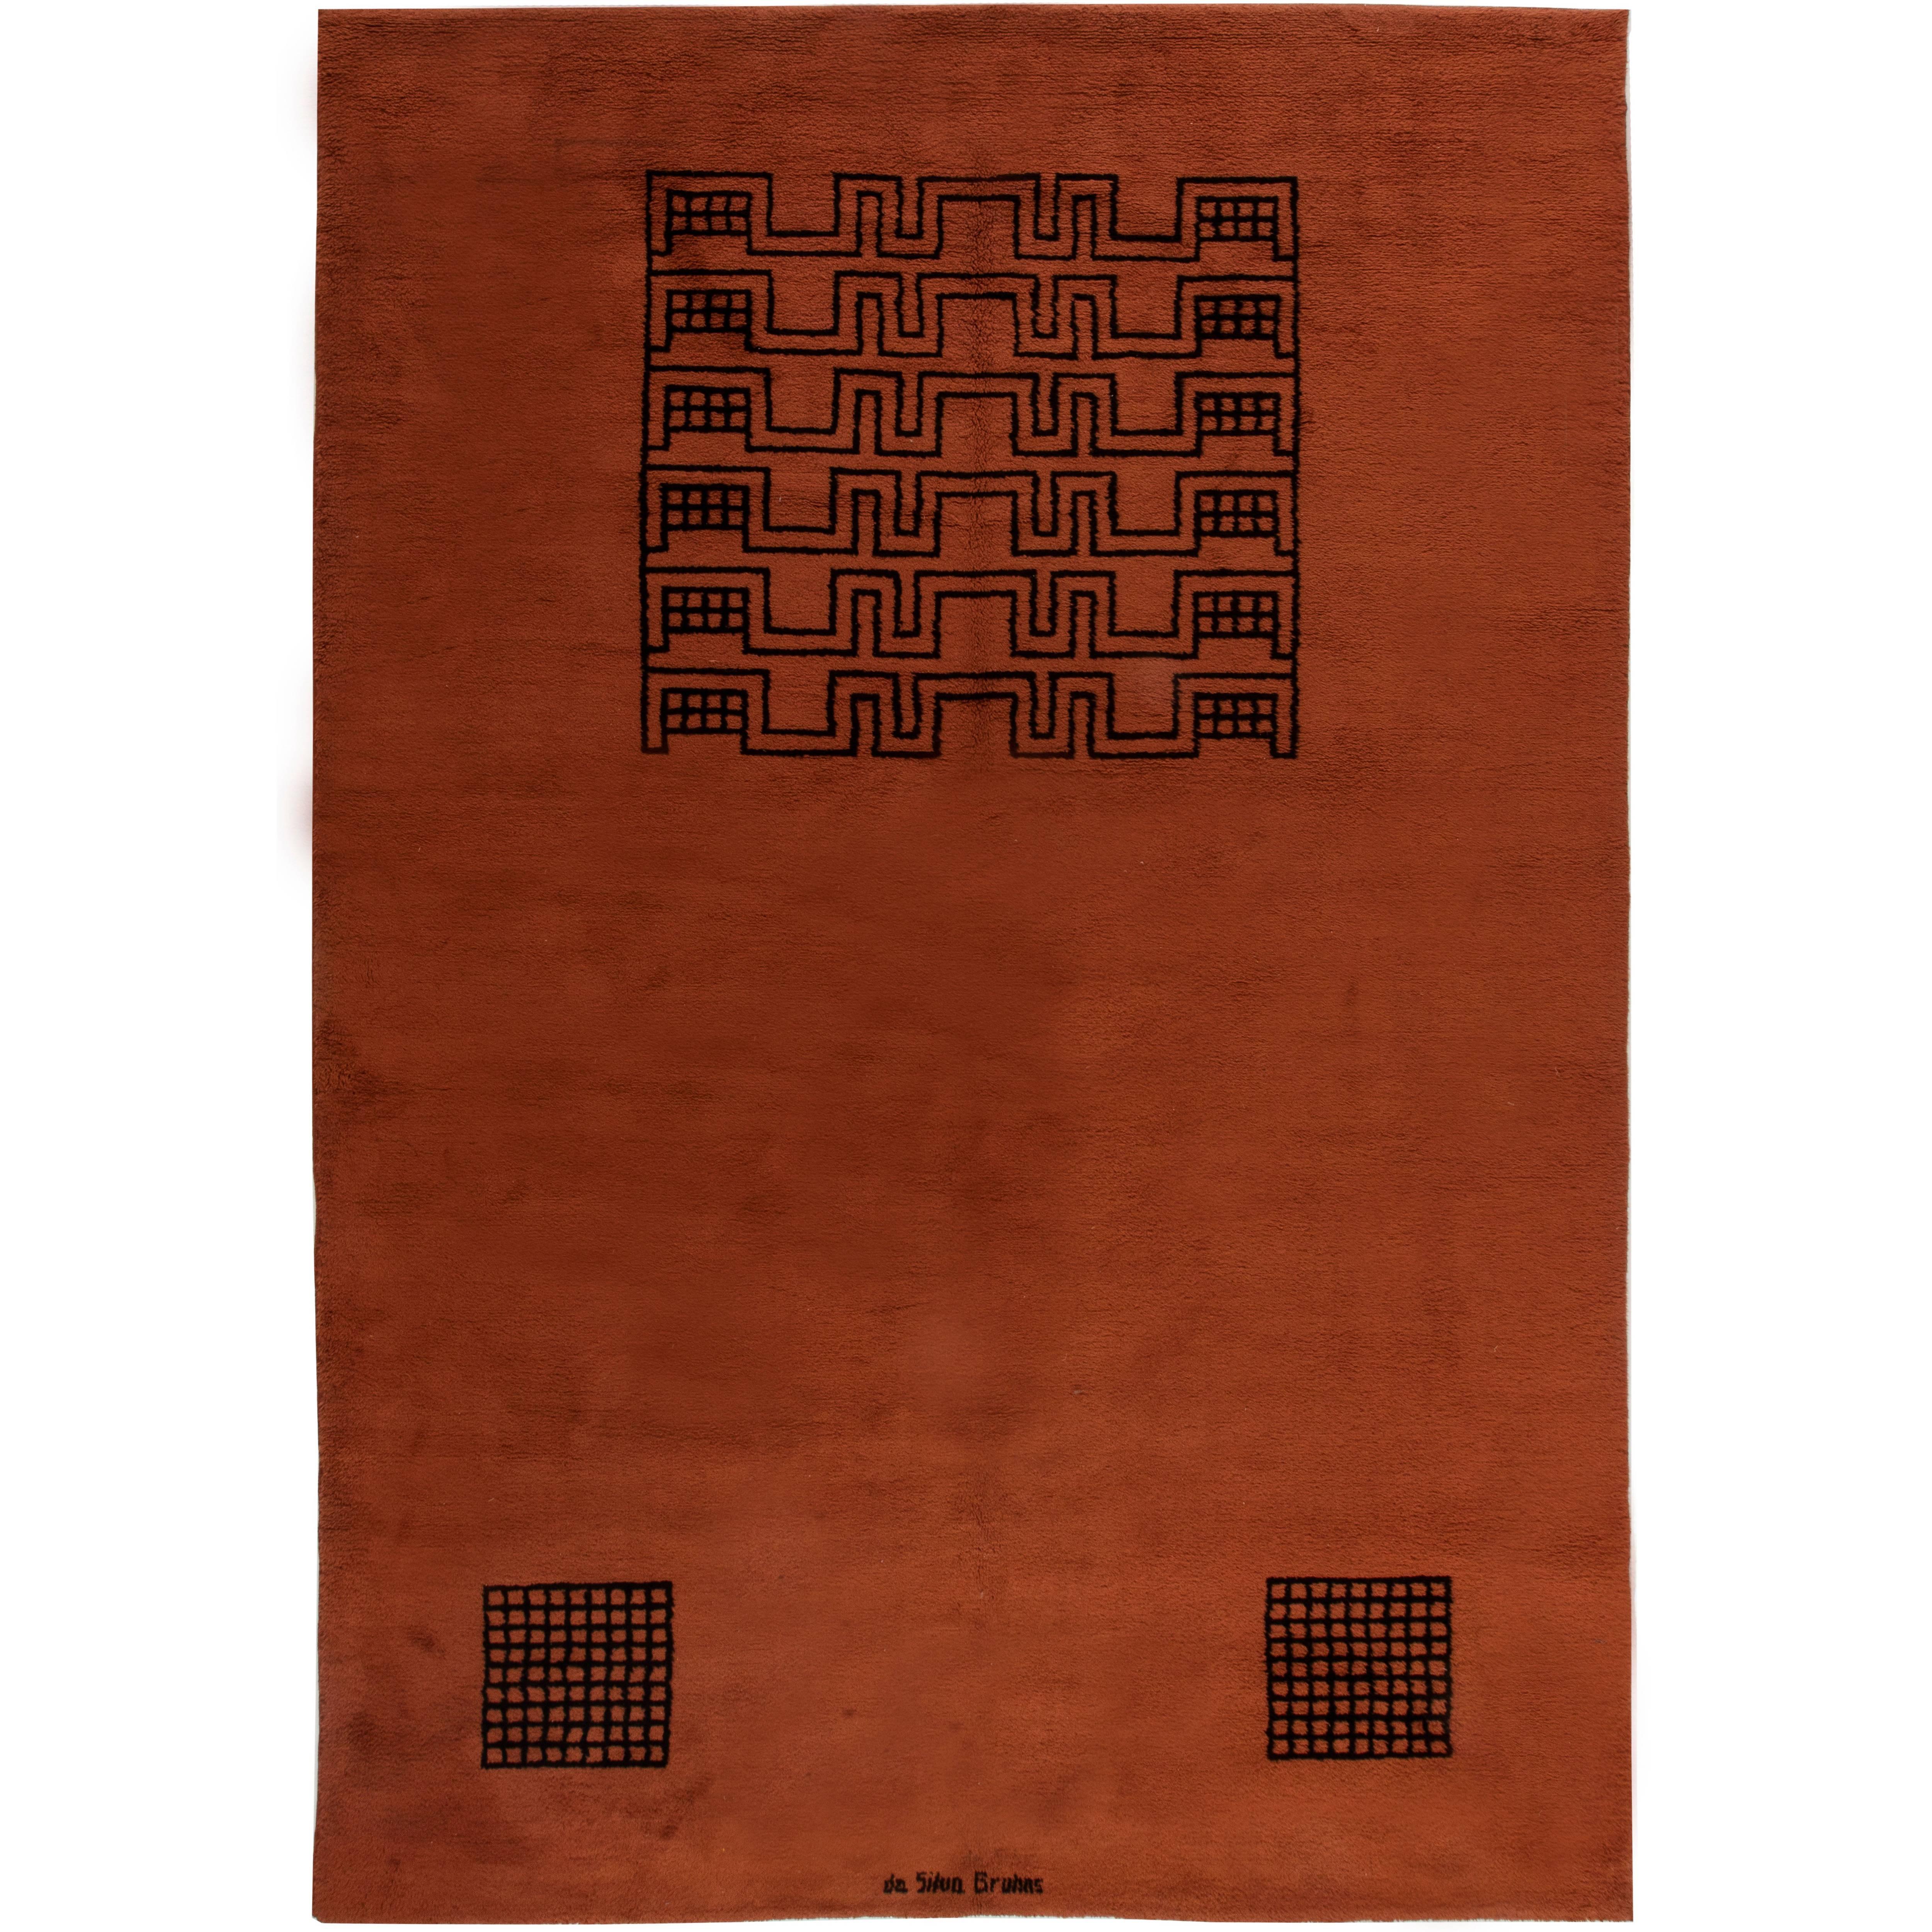 Deco Carpet by Ivan da Silva Bruhns